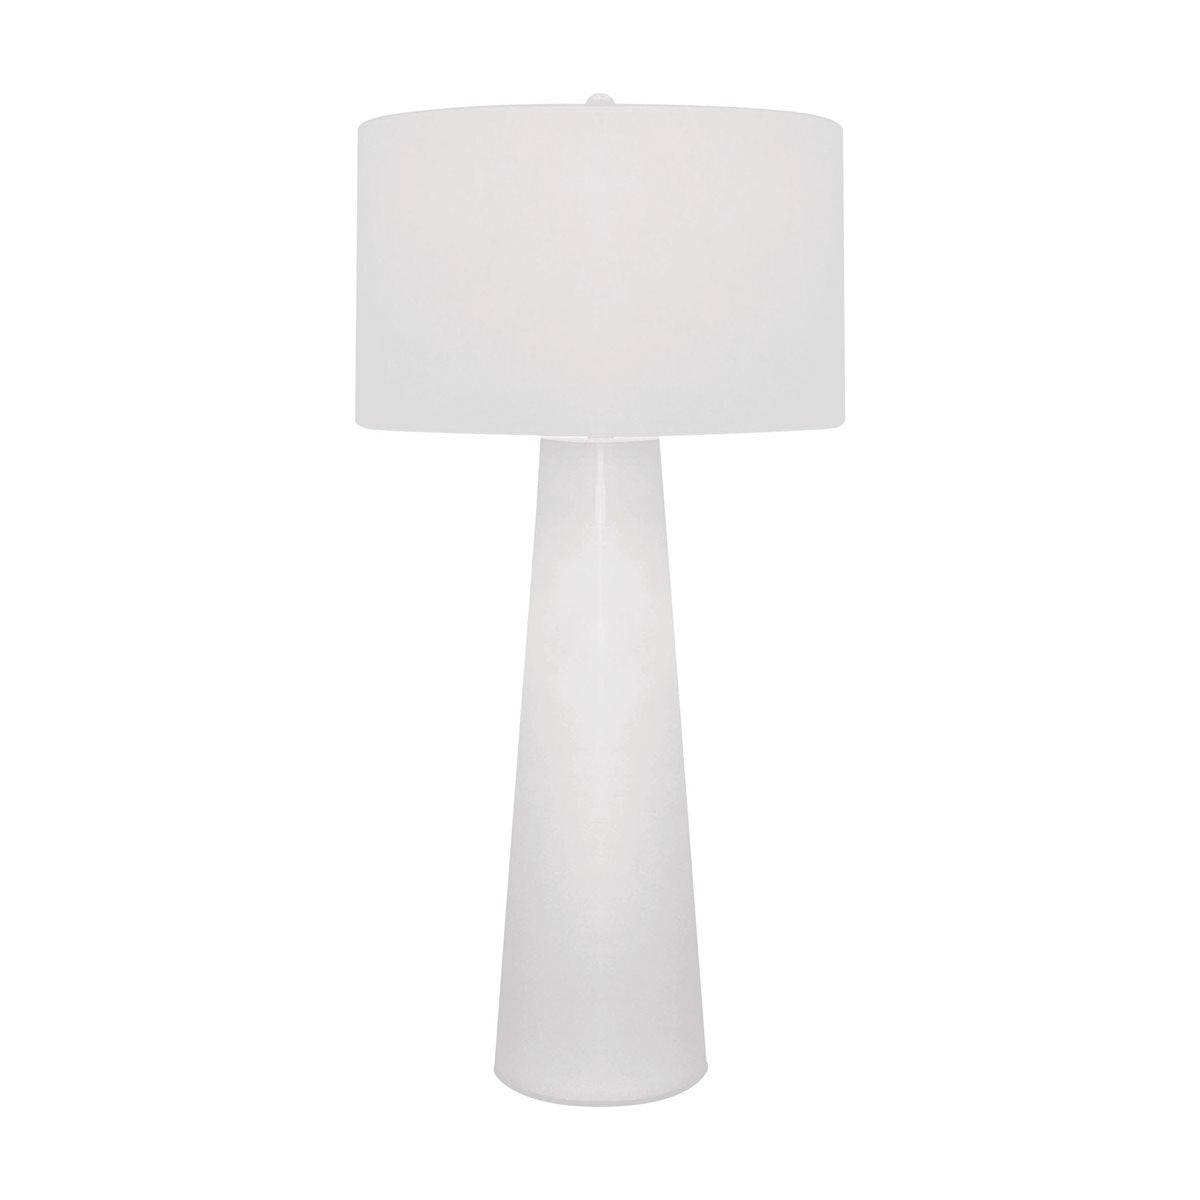 ELK Home - 203 - One Light Table Lamp - Obelisk - White